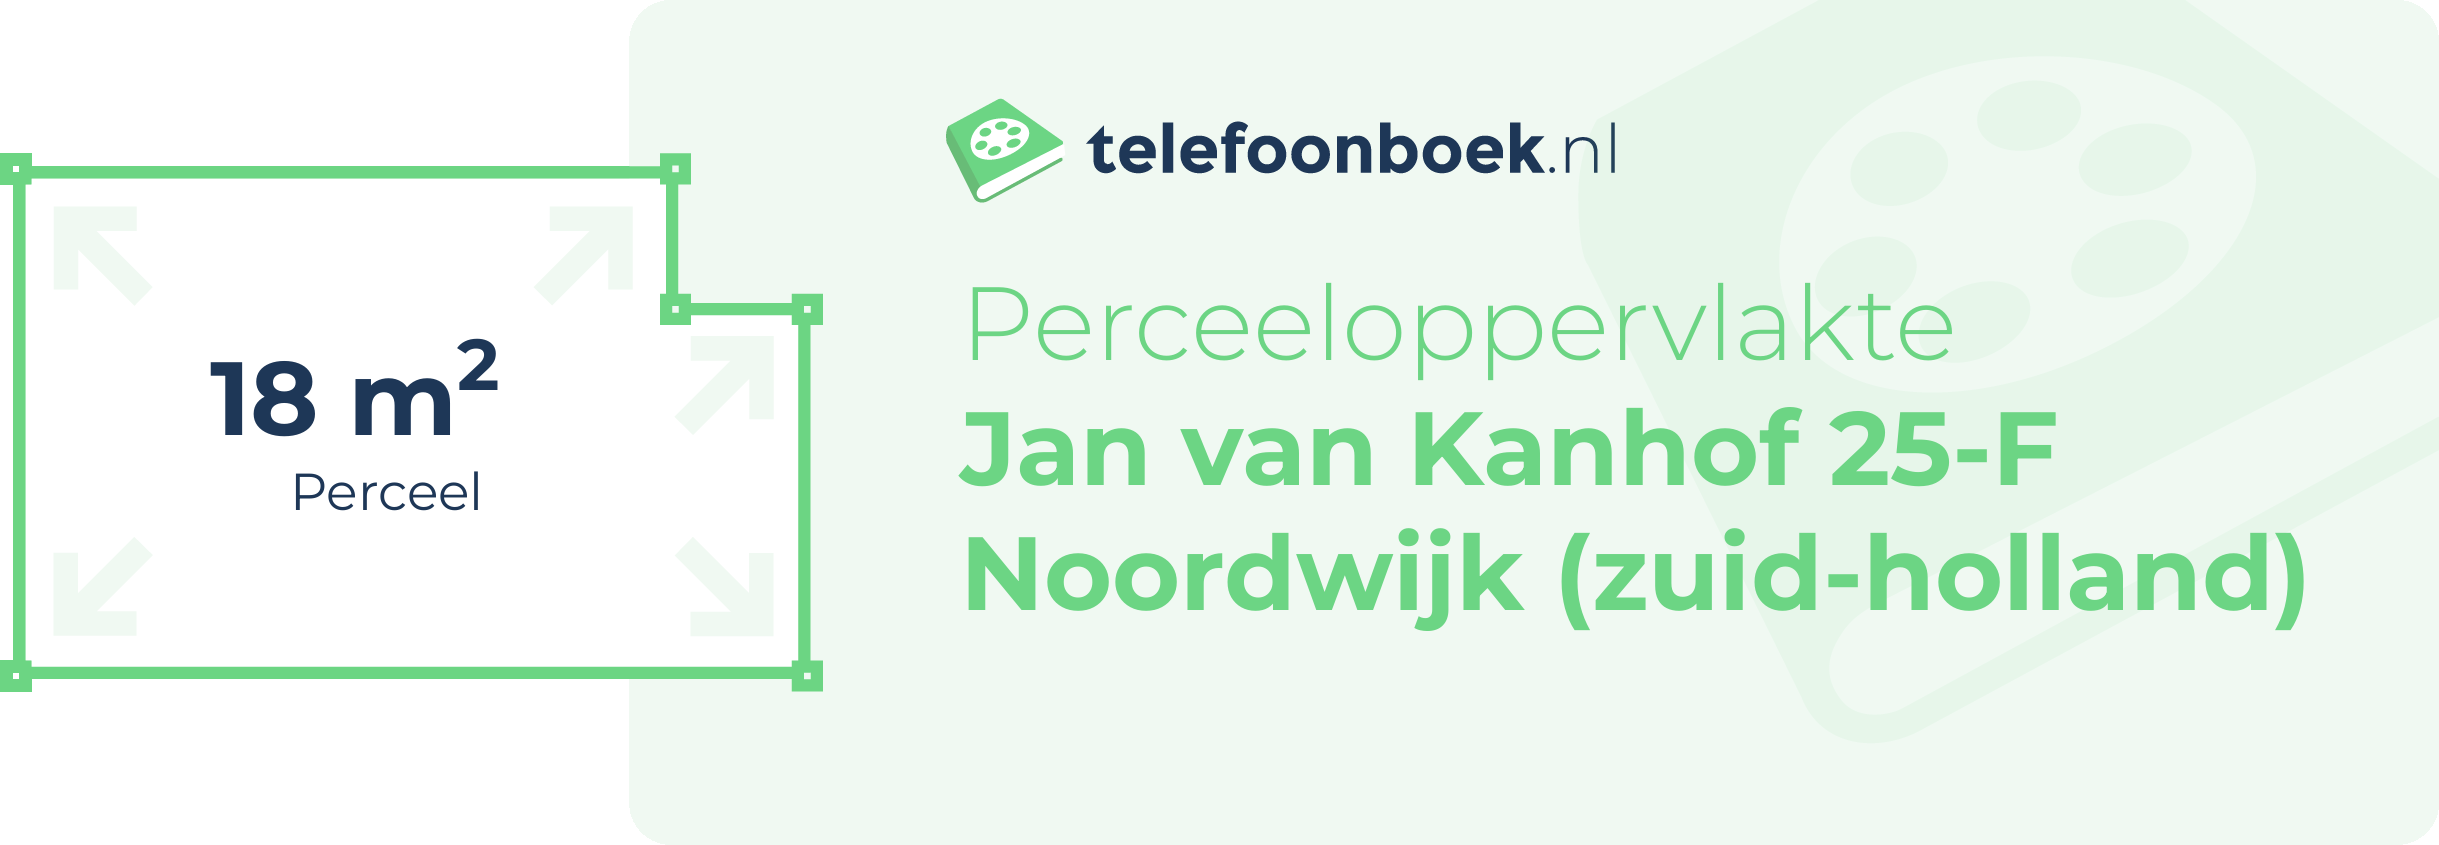 Perceeloppervlakte Jan Van Kanhof 25-F Noordwijk (Zuid-Holland)